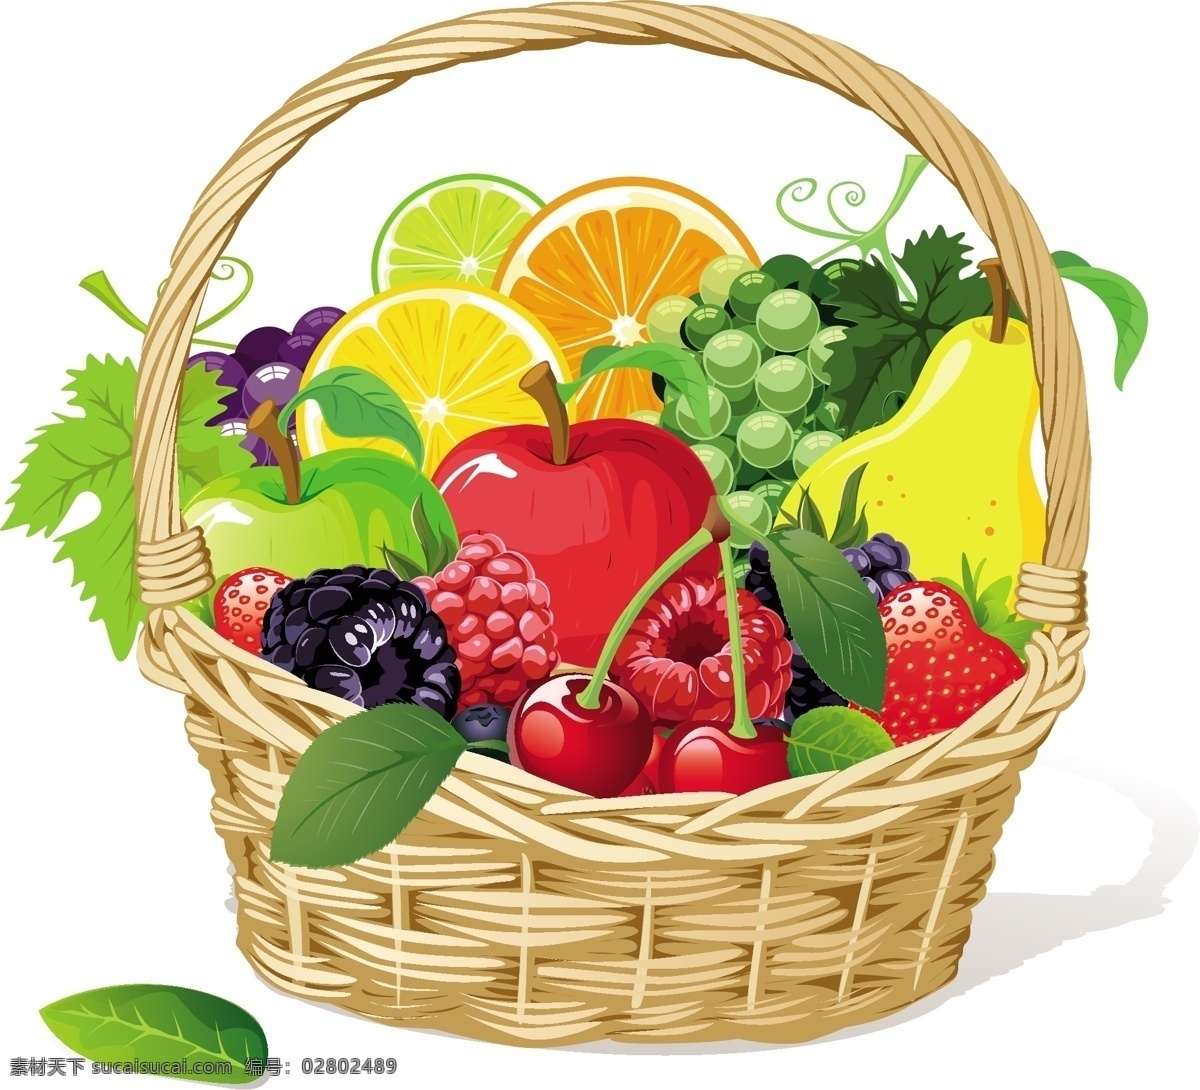 水果果篮设计 水果 水果素材 矢量水果 水果设计 果篮 果篮素材 矢量果篮 矢量素材 餐饮美食 生活百科 白色